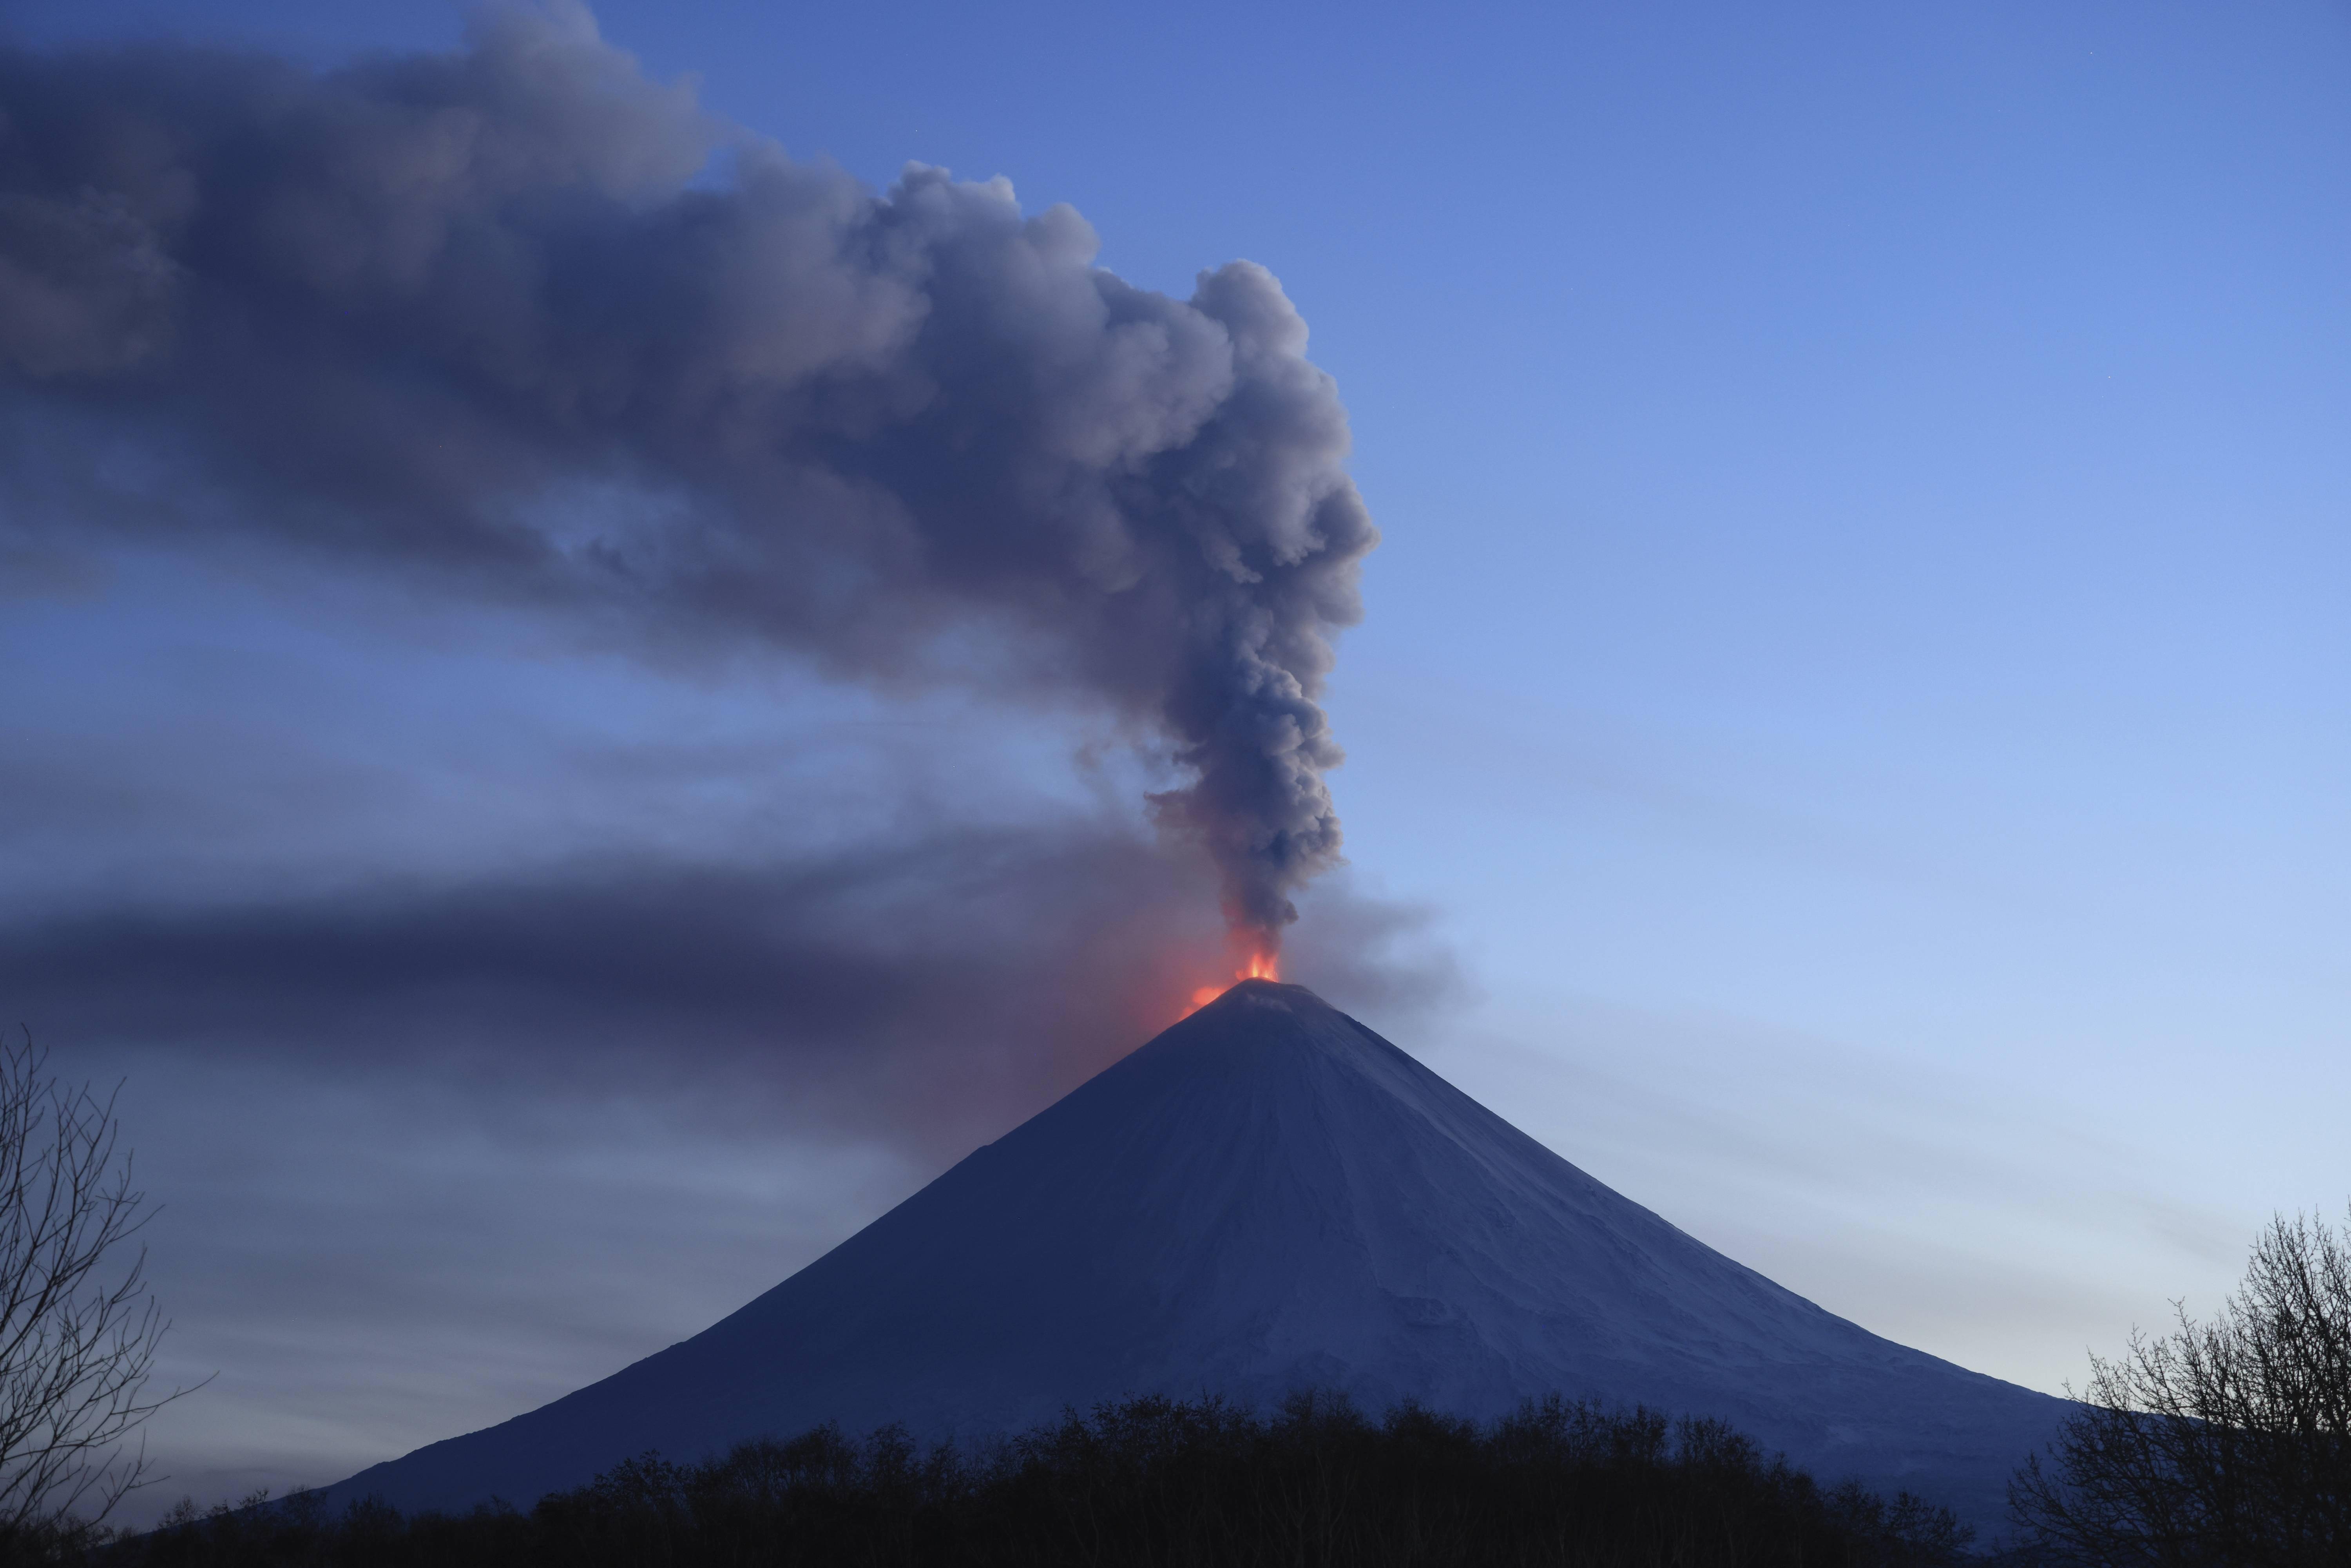 《新闻周刊》网站11月16日报道,全球有46座火山处于持续喷发状态,其中